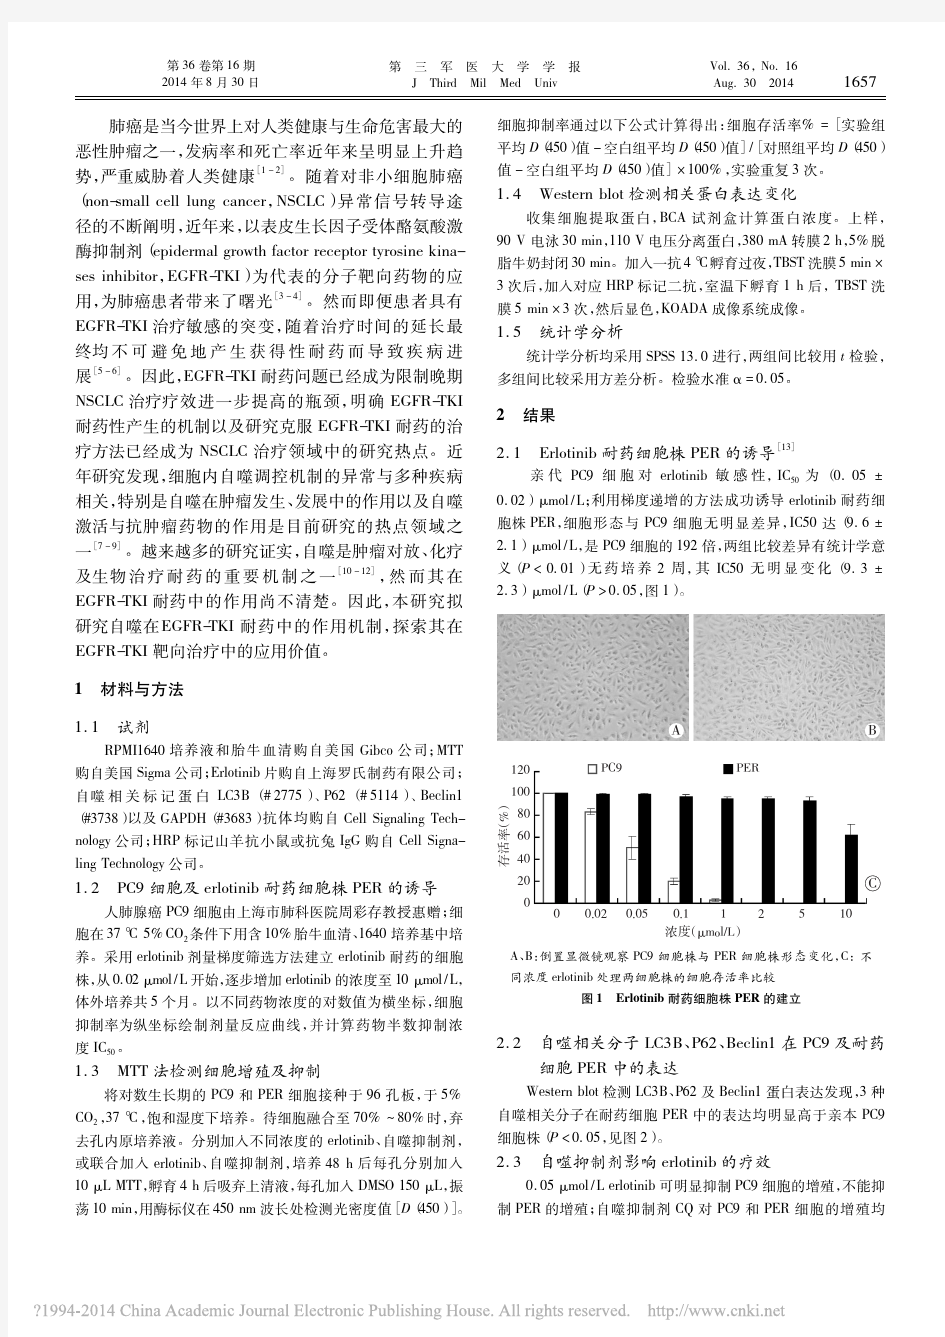 自噬在表皮生长因子受体酪氨酸激酶抑制剂耐药中的作用_刘明